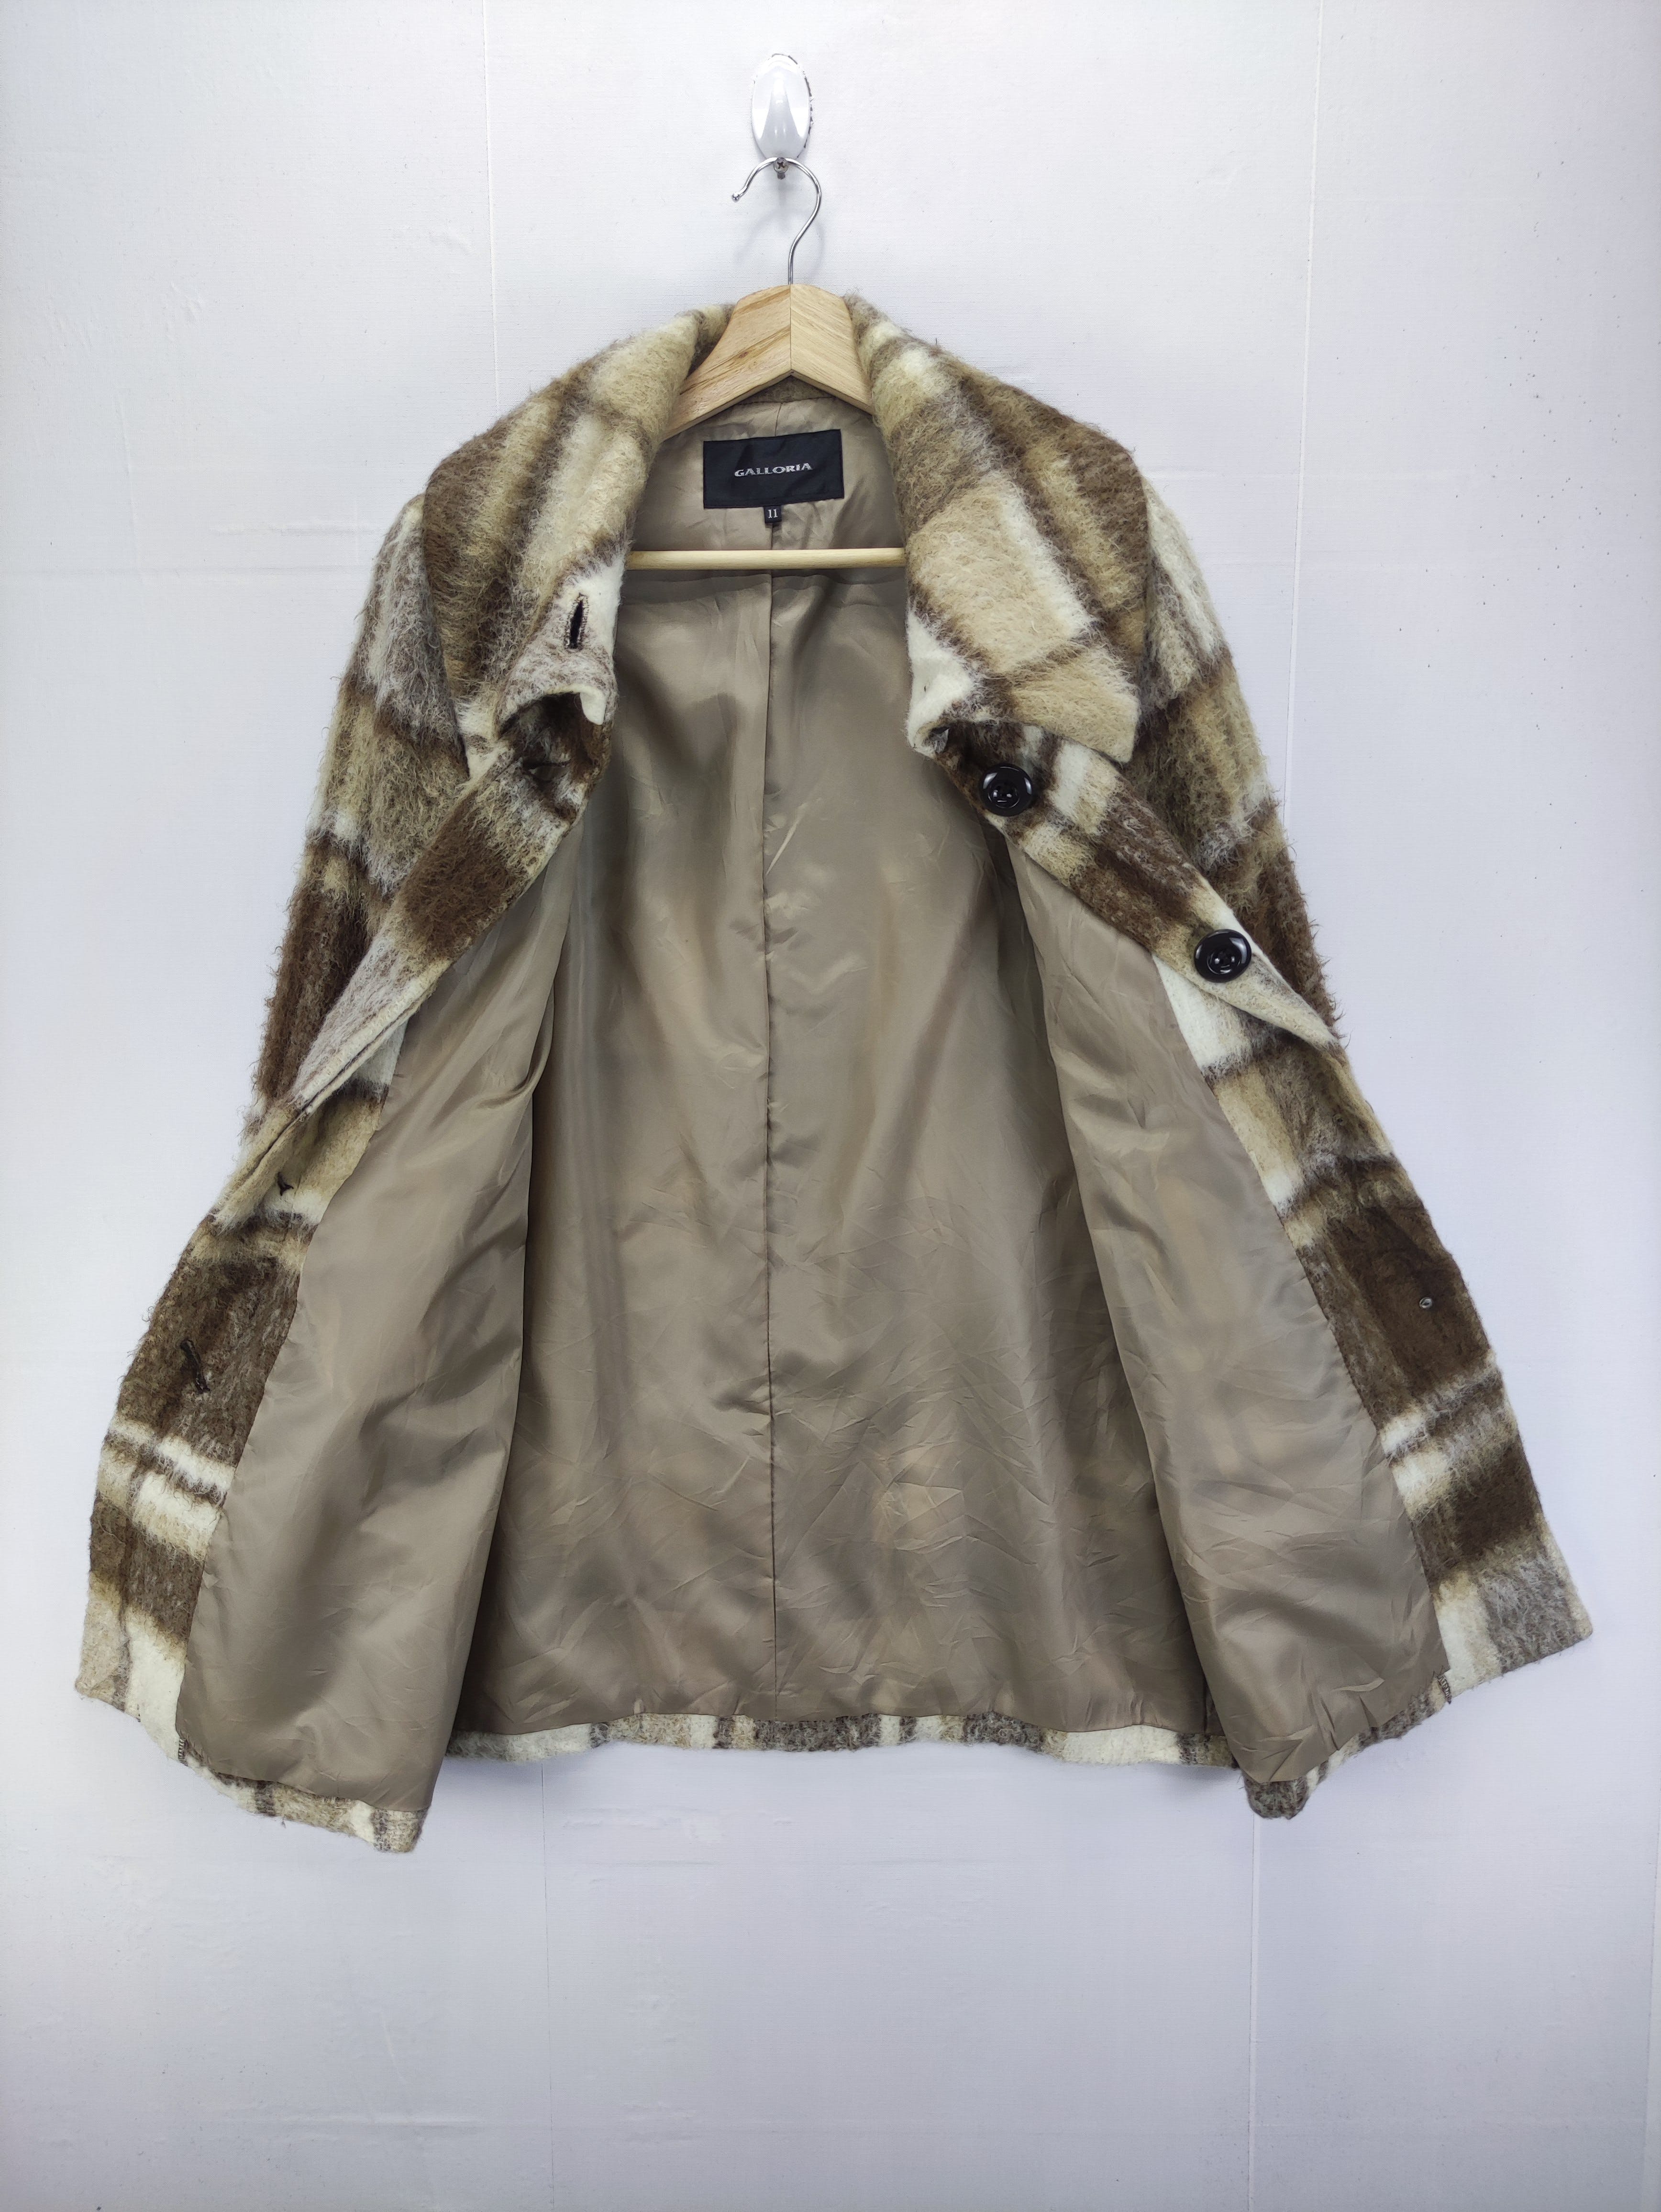 Vintage Wool Coat Jacket By Galloria - 4